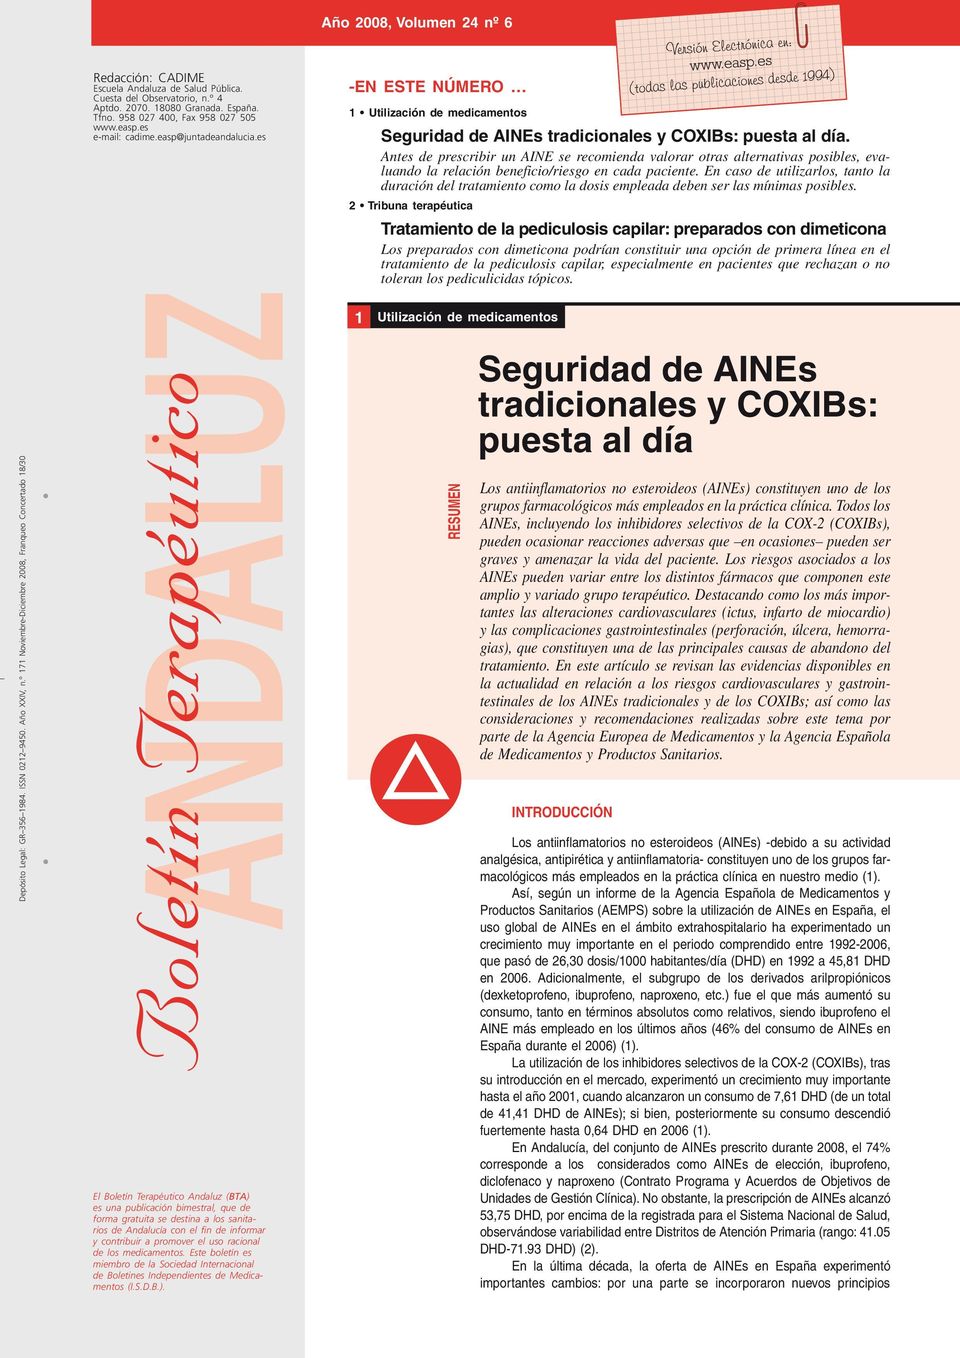 es andaluz Boletín Terapéutico El Boletín Terapéutico Andaluz (BTA) es una publicación bimestral, que de forma gratuita se destina a los sanitarios de Andalucía con el fin de informar y contribuir a